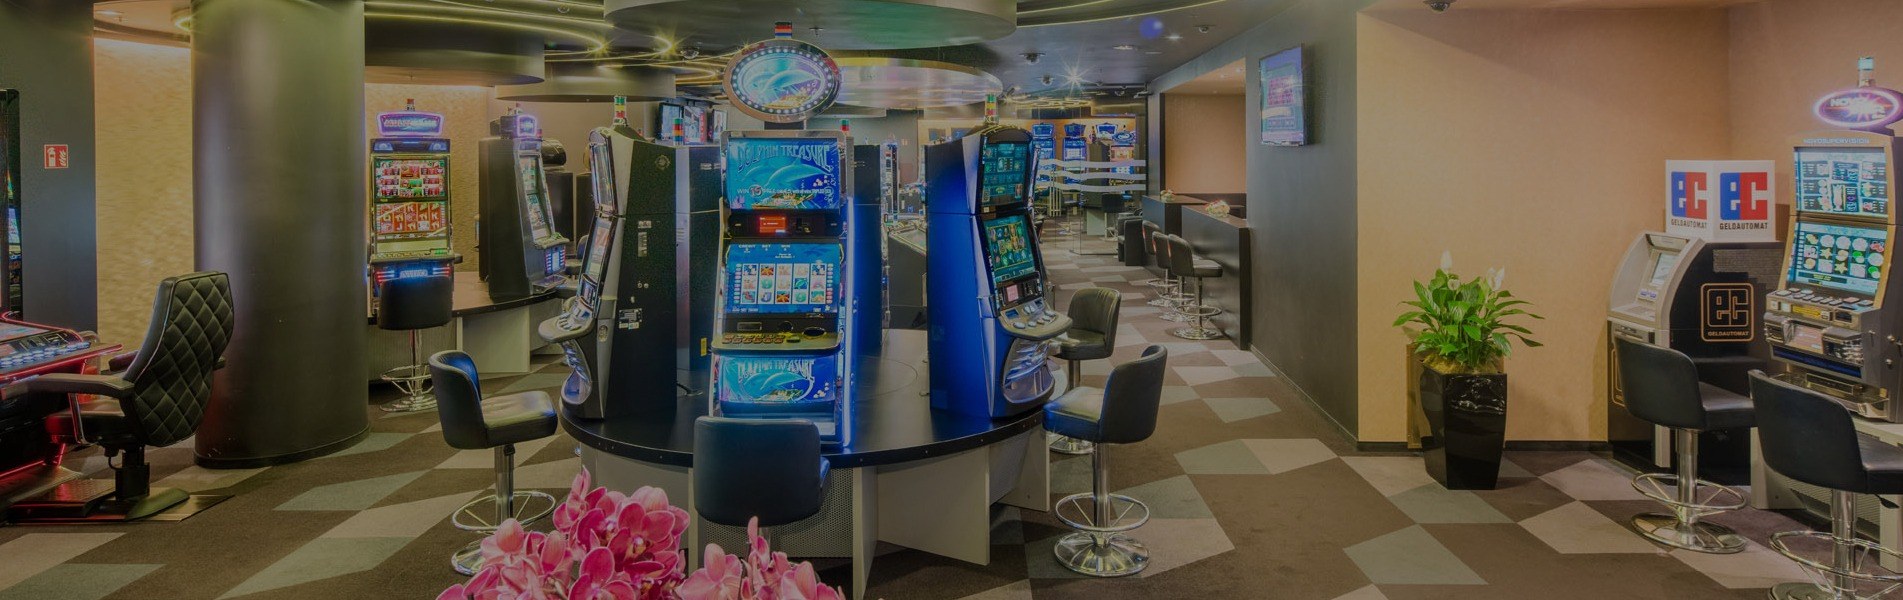 Casino Spielbank Mundsburg 2